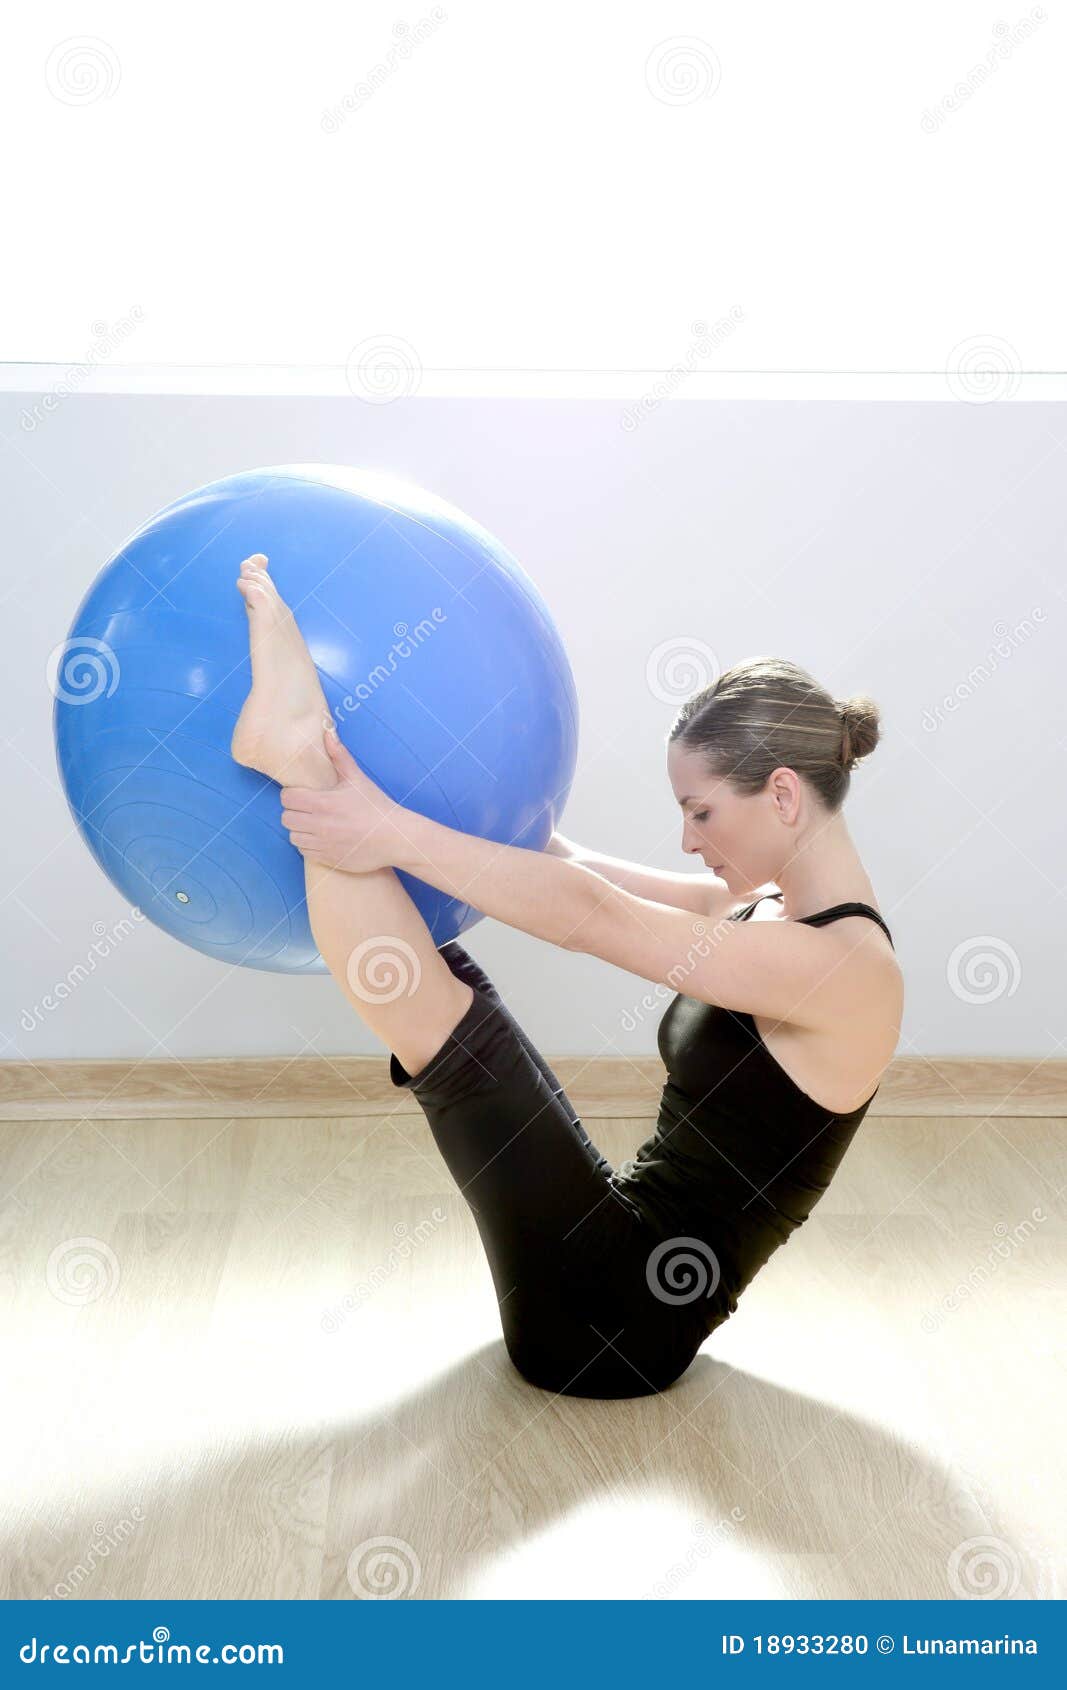 pilates yoga ball